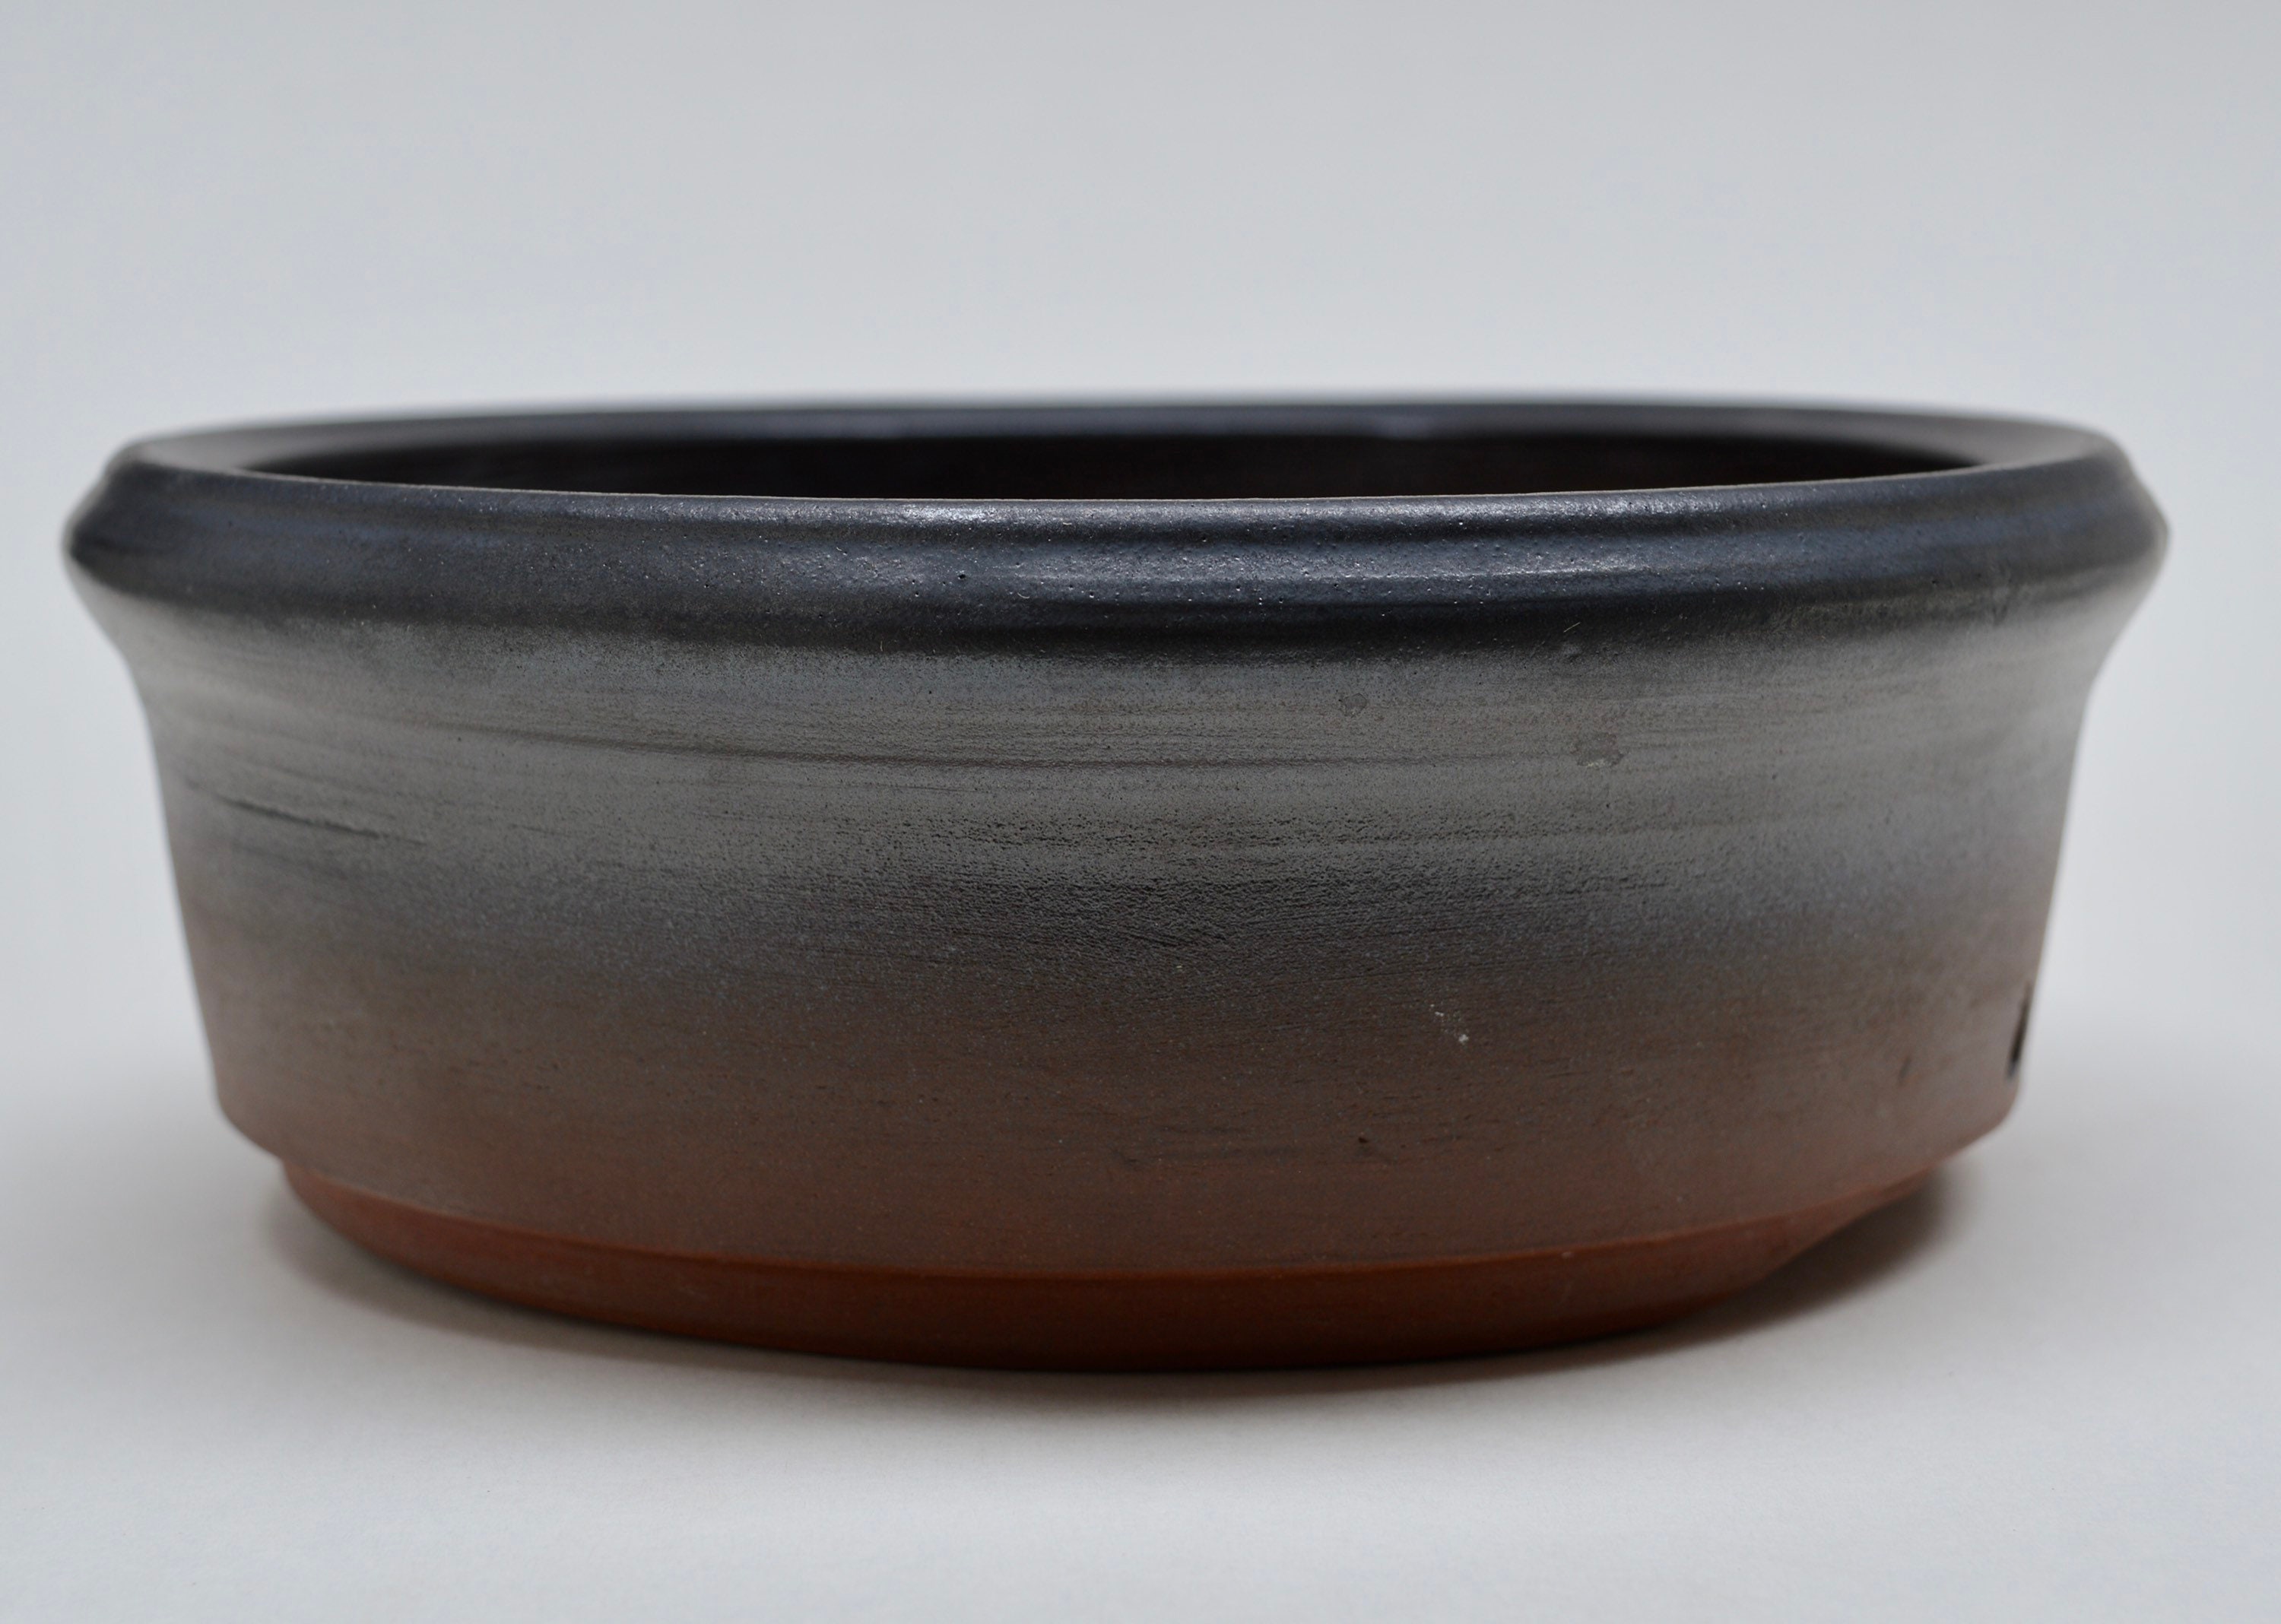 14cm x 14cm x 19.5cm High Quality Special Handmade Unglazed Bonsai Pots 